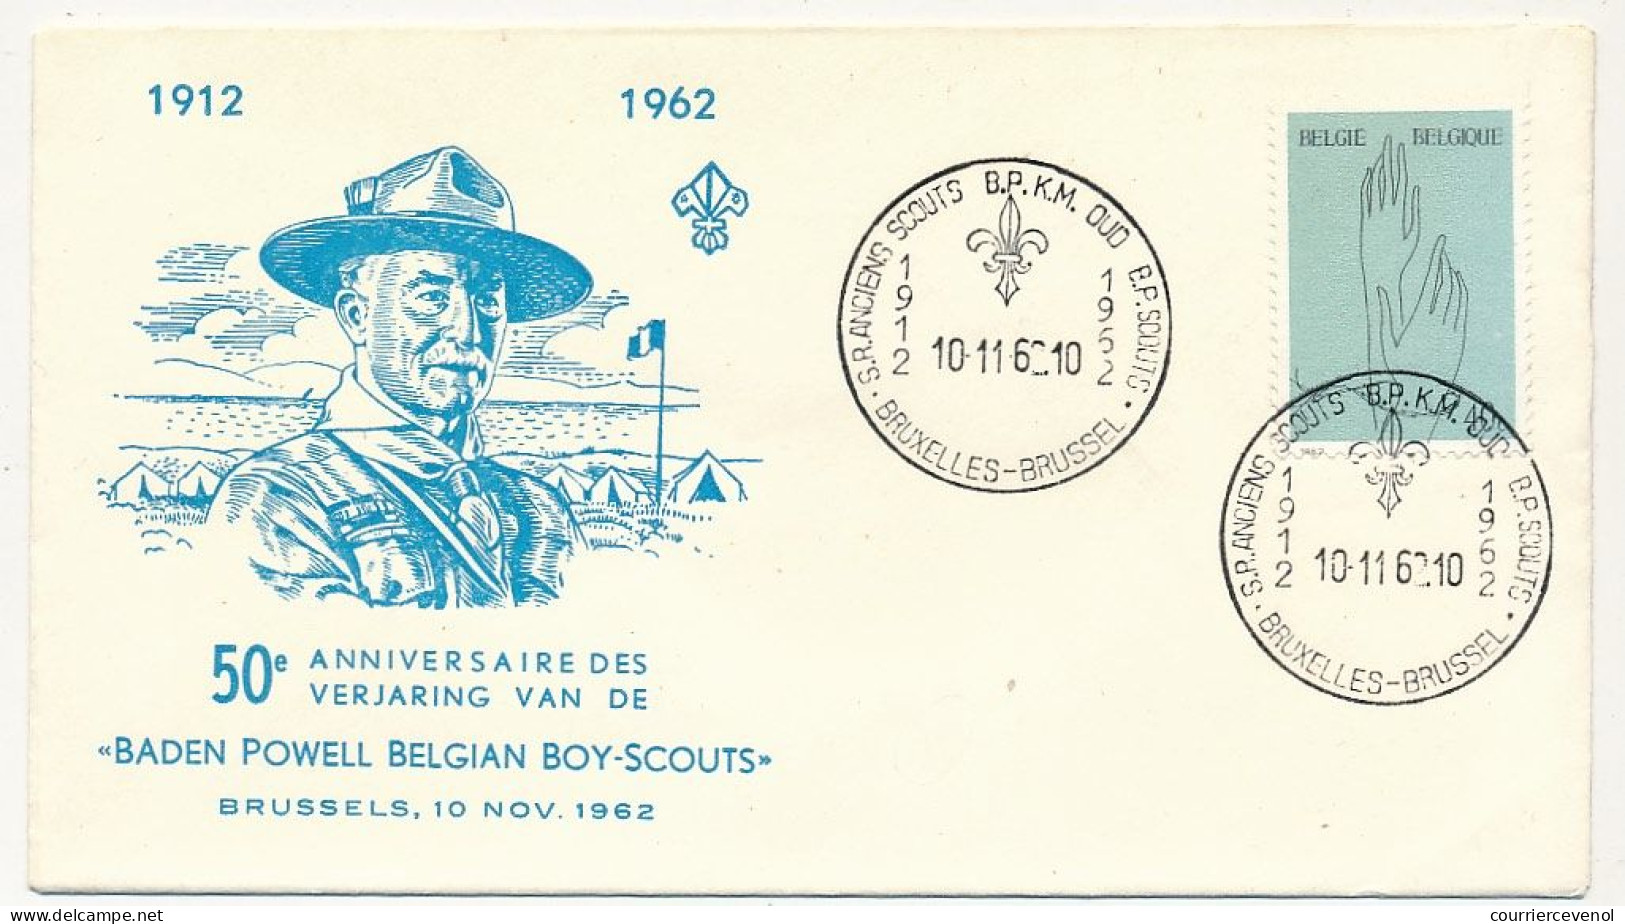 BELGIQUE - Env. FDC 50eme Anniversaire Baden Powell Belgian Boy-Scouts - 10/11/1962 - Brieven En Documenten